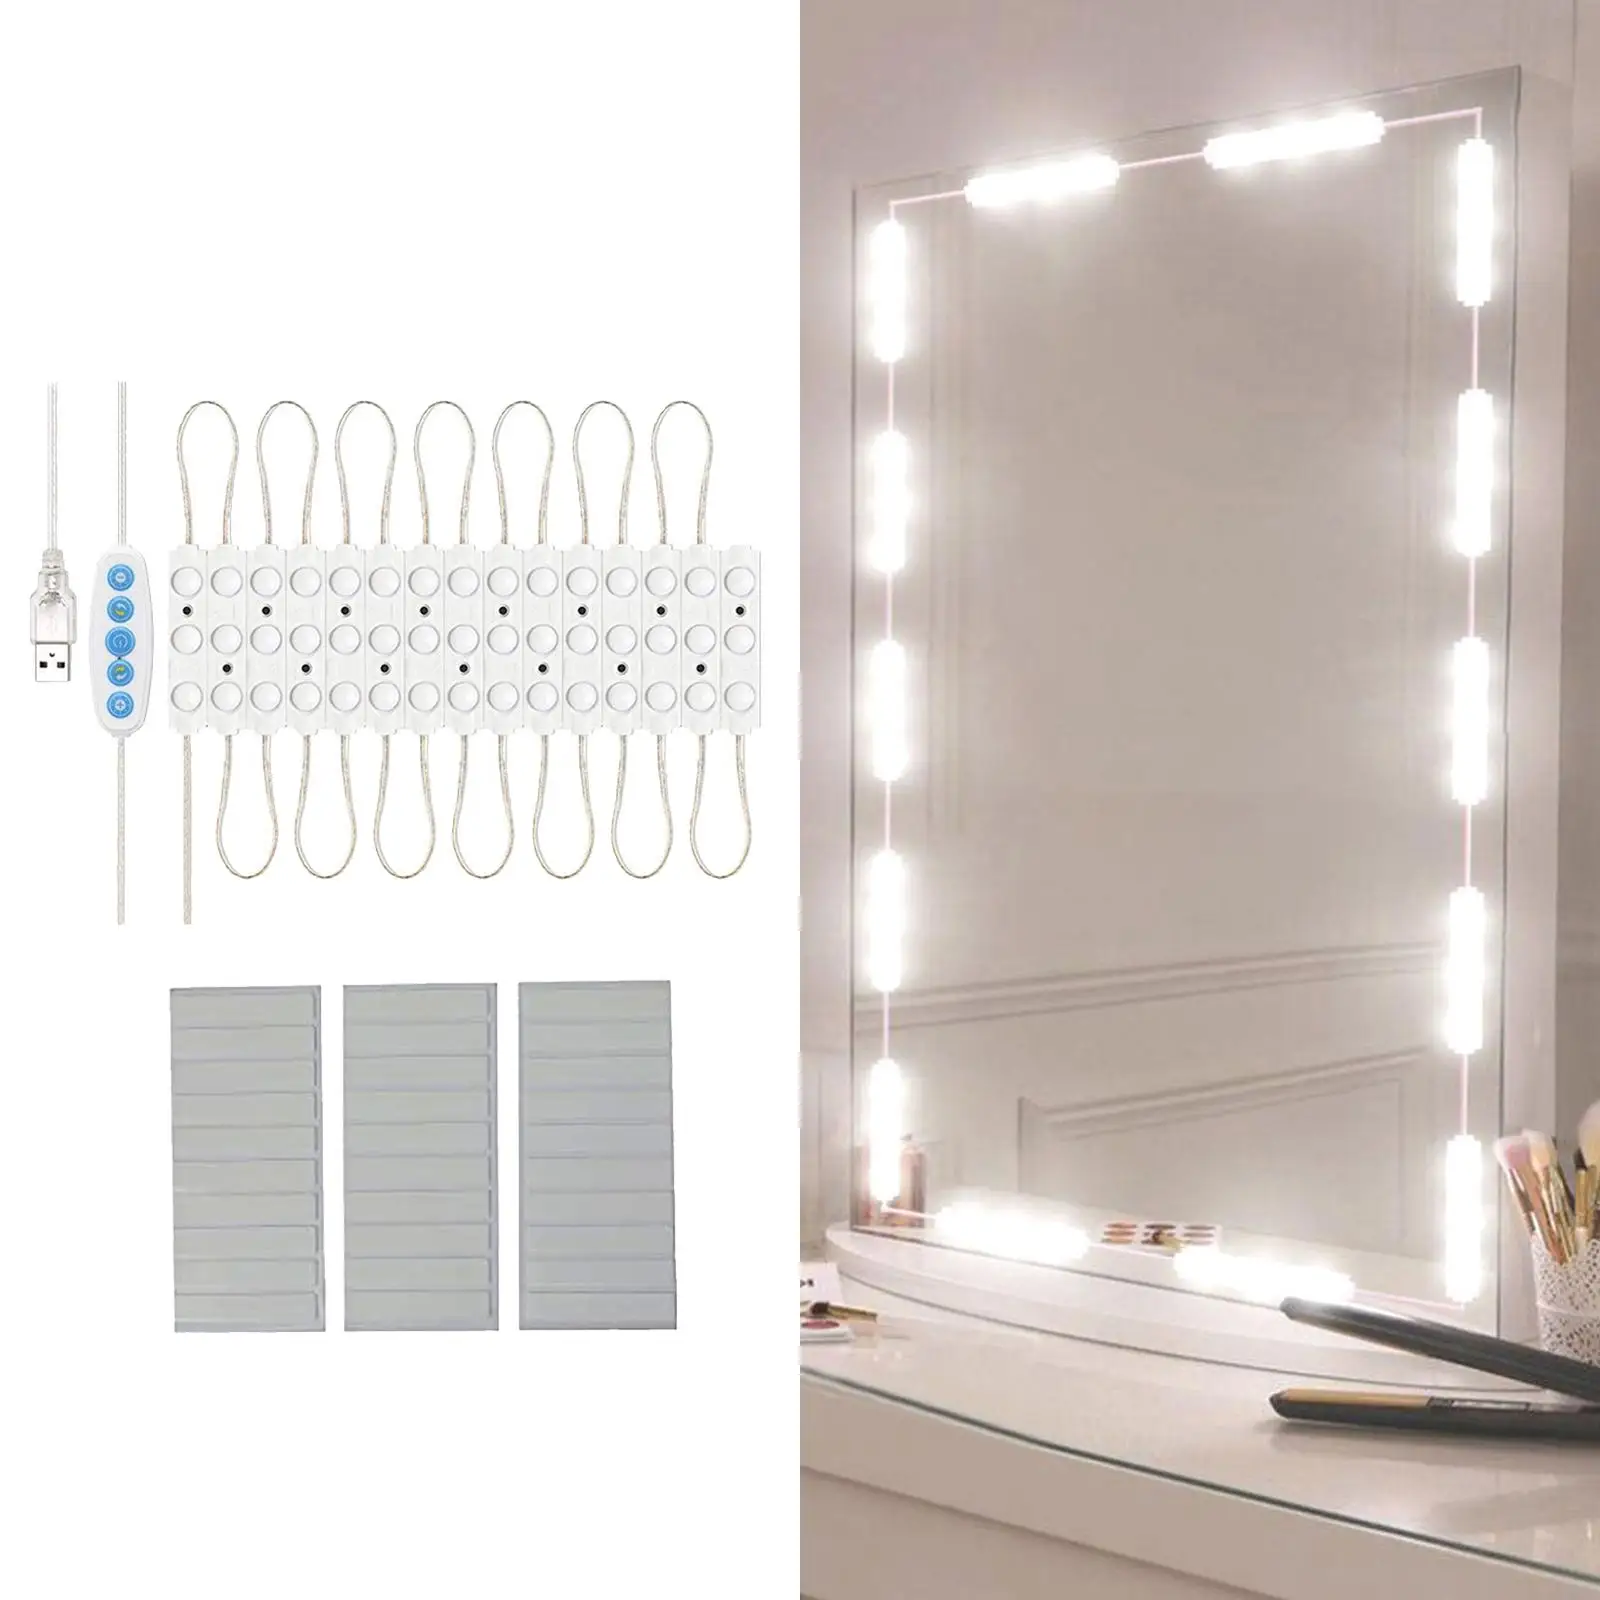 200inch Makeup Mirror Light 5 Color Temperature Adjustment Modes Lighting Fixture Strip for Makeup Vanity Table Bedroom Indoor